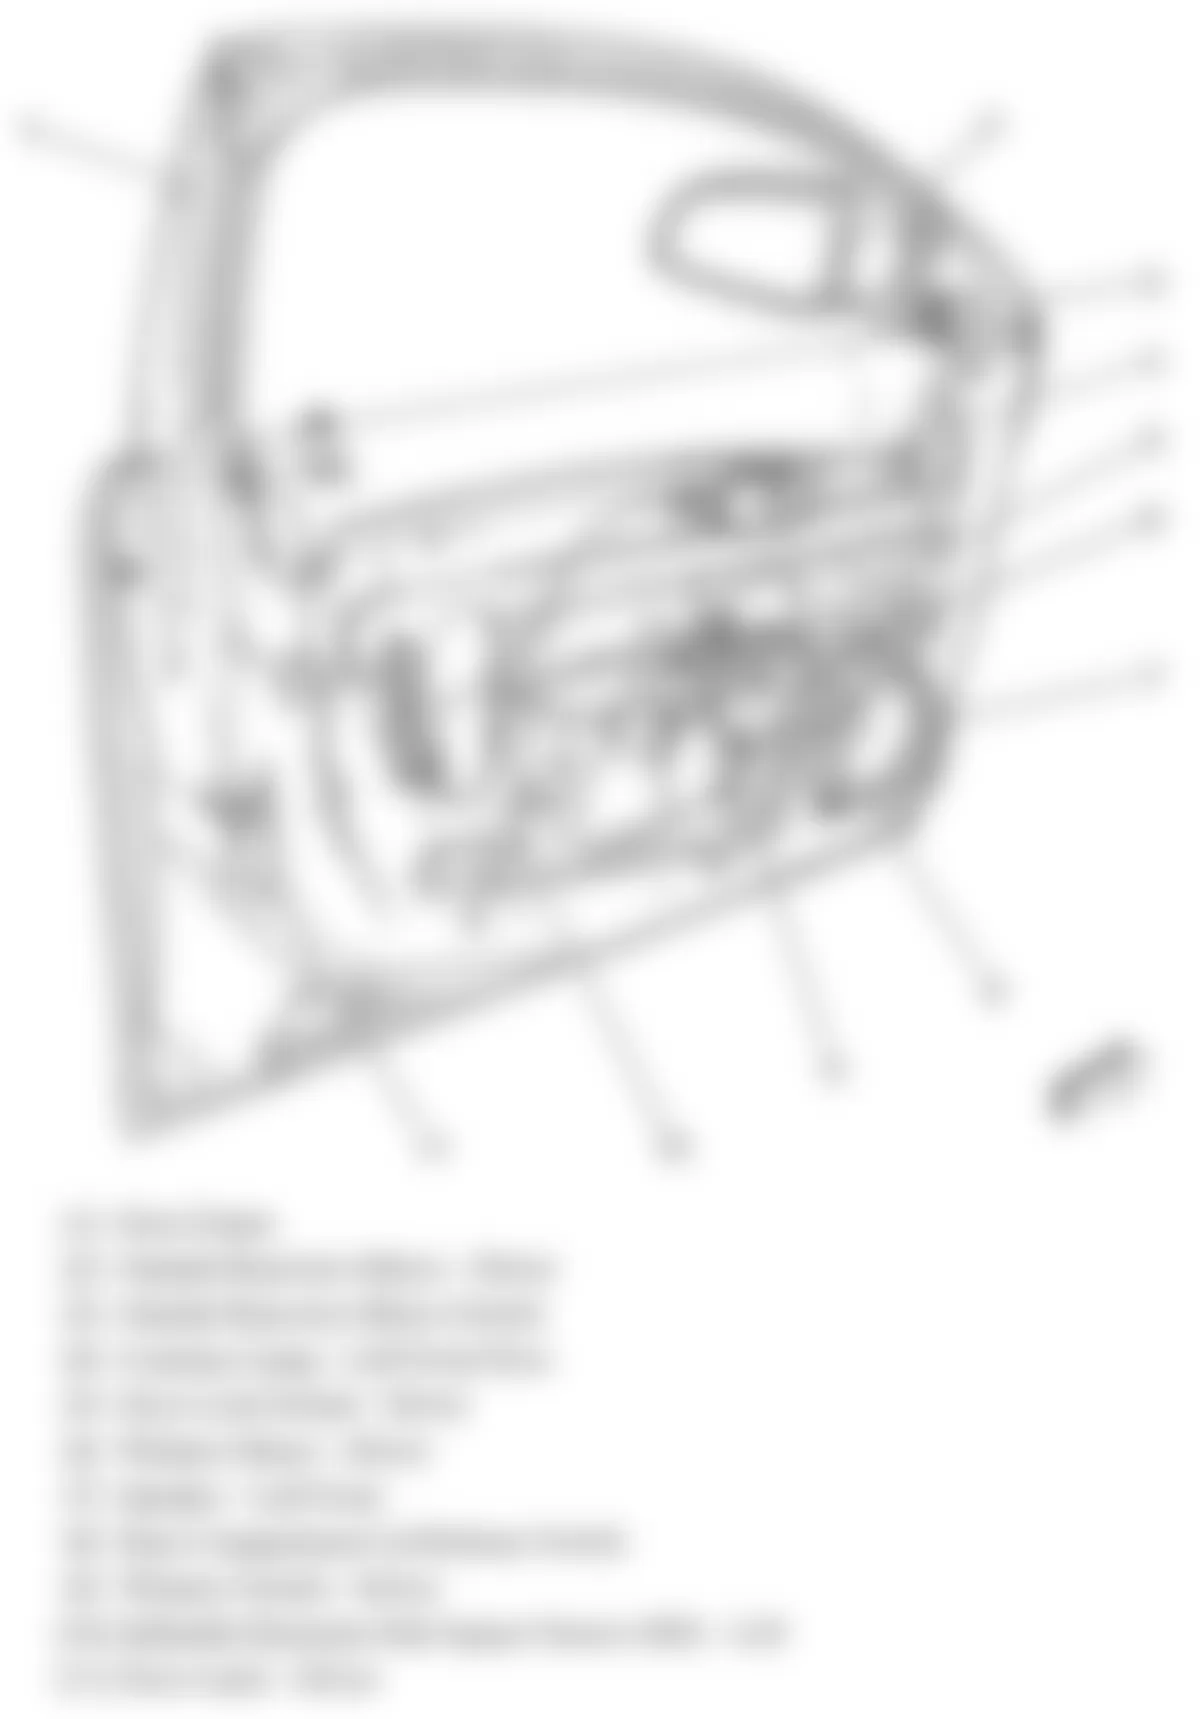 Chevrolet Malibu LT 2008 - Component Locations -  Drivers Door